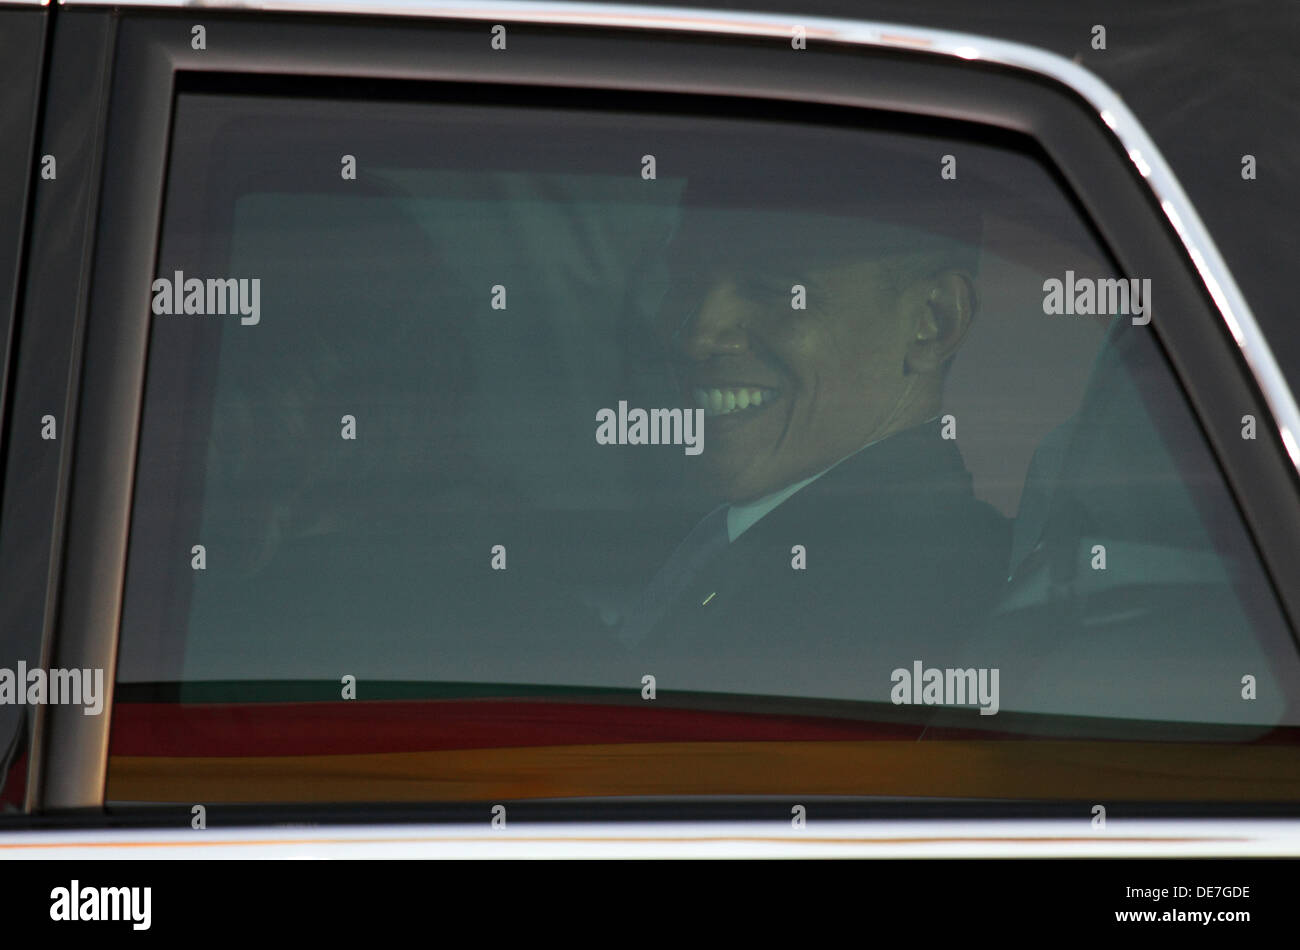 Berlin, Germany, State visit of U.S. President Barack Obama in Berlin Stock Photo